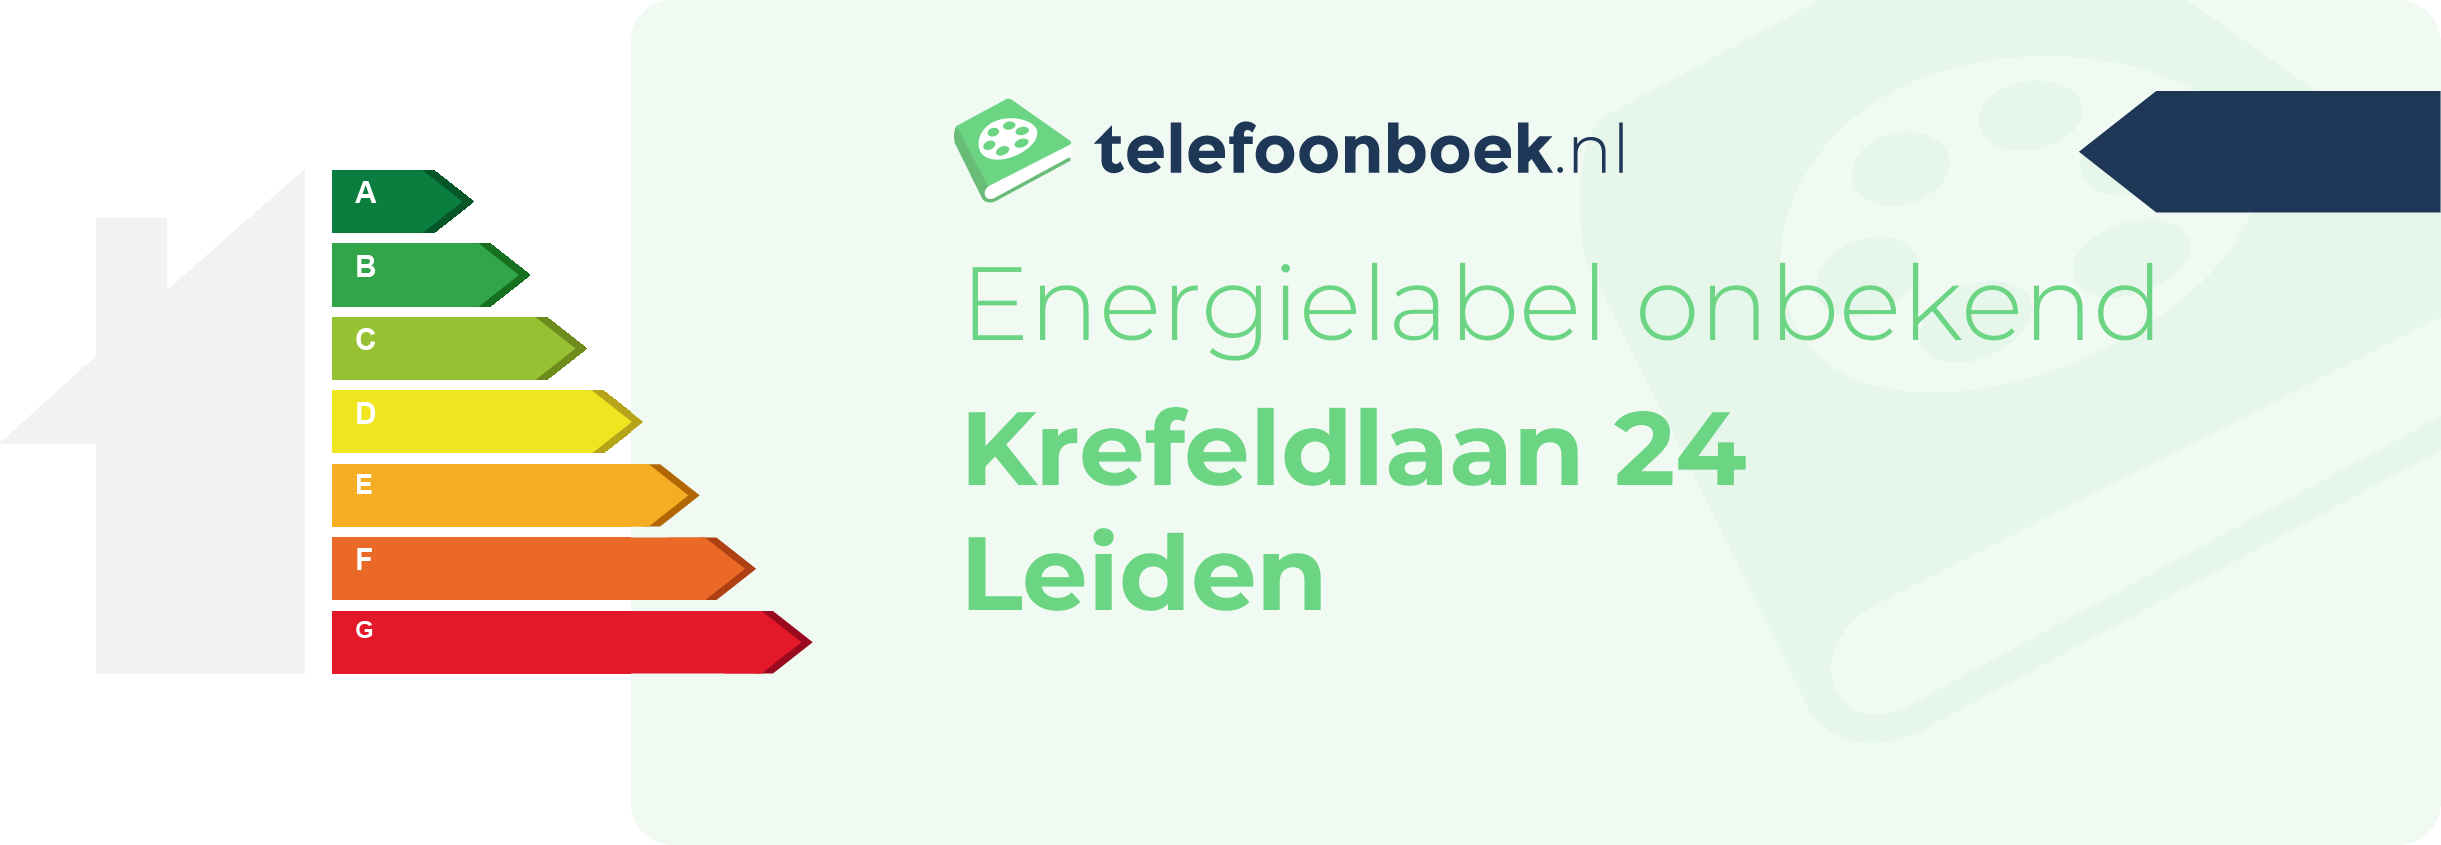 Energielabel Krefeldlaan 24 Leiden